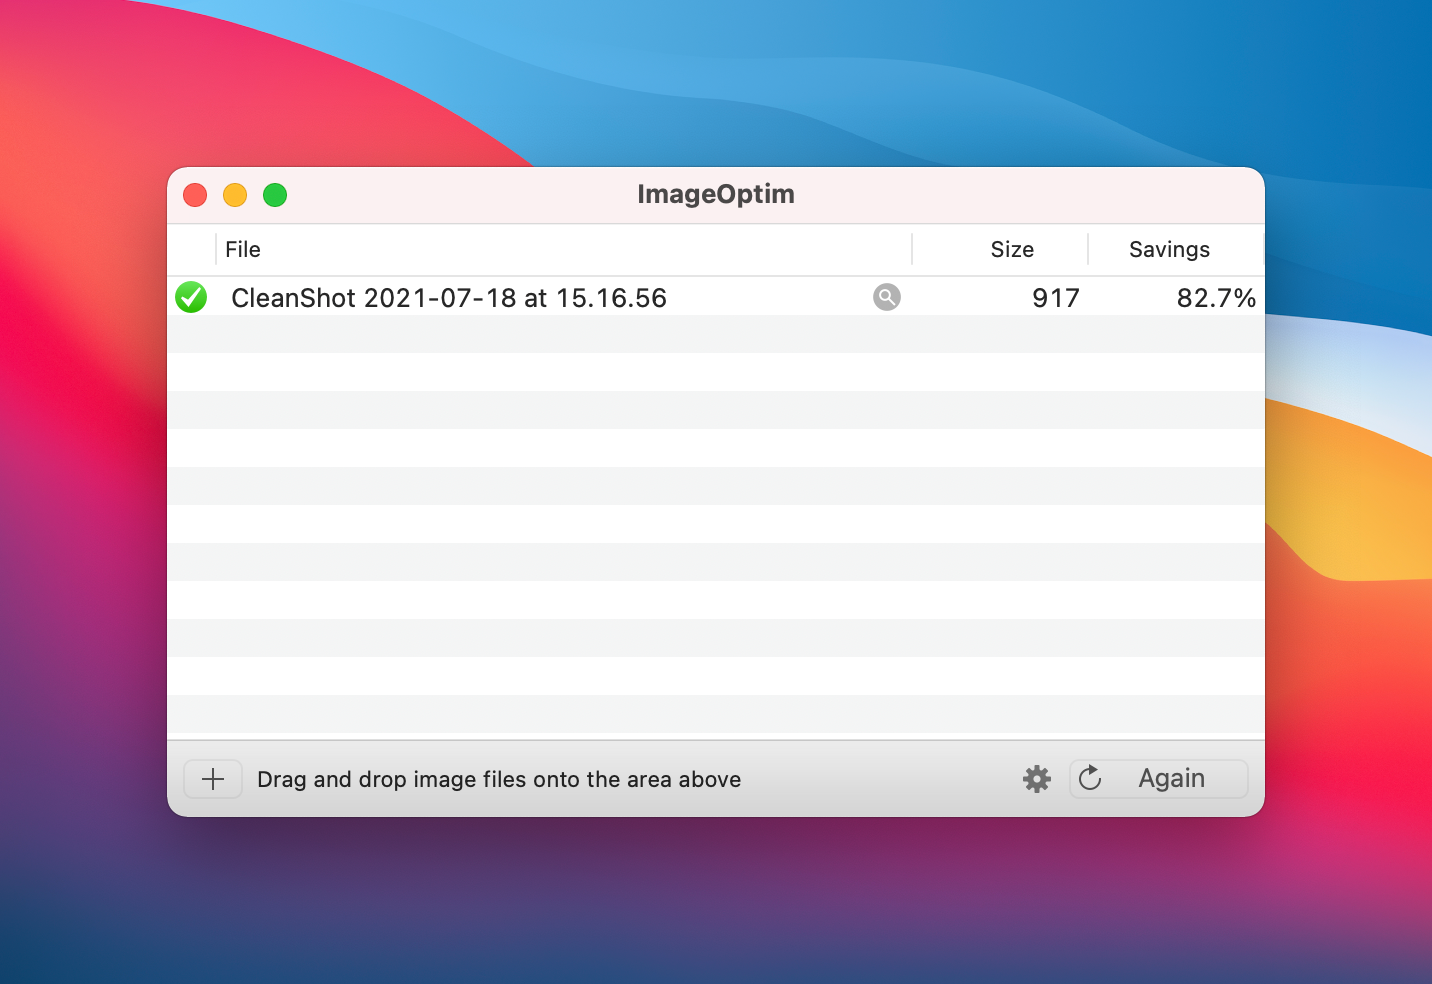 ImageOptim Example Optimization Output